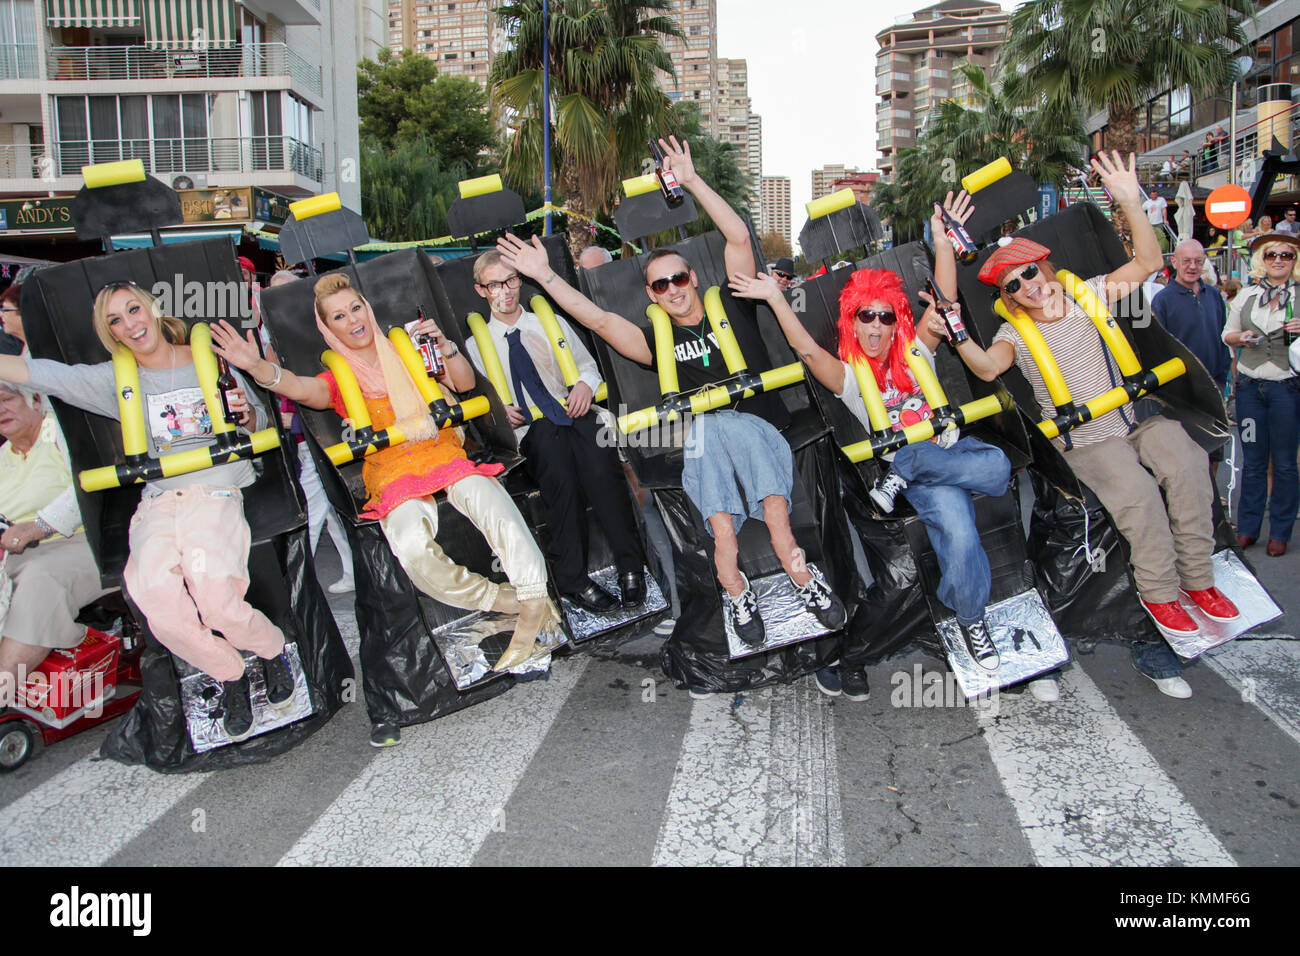 Benidorm città nuova British fancy dress giorno gruppo di persone vestite come un roller coaster ride Foto Stock